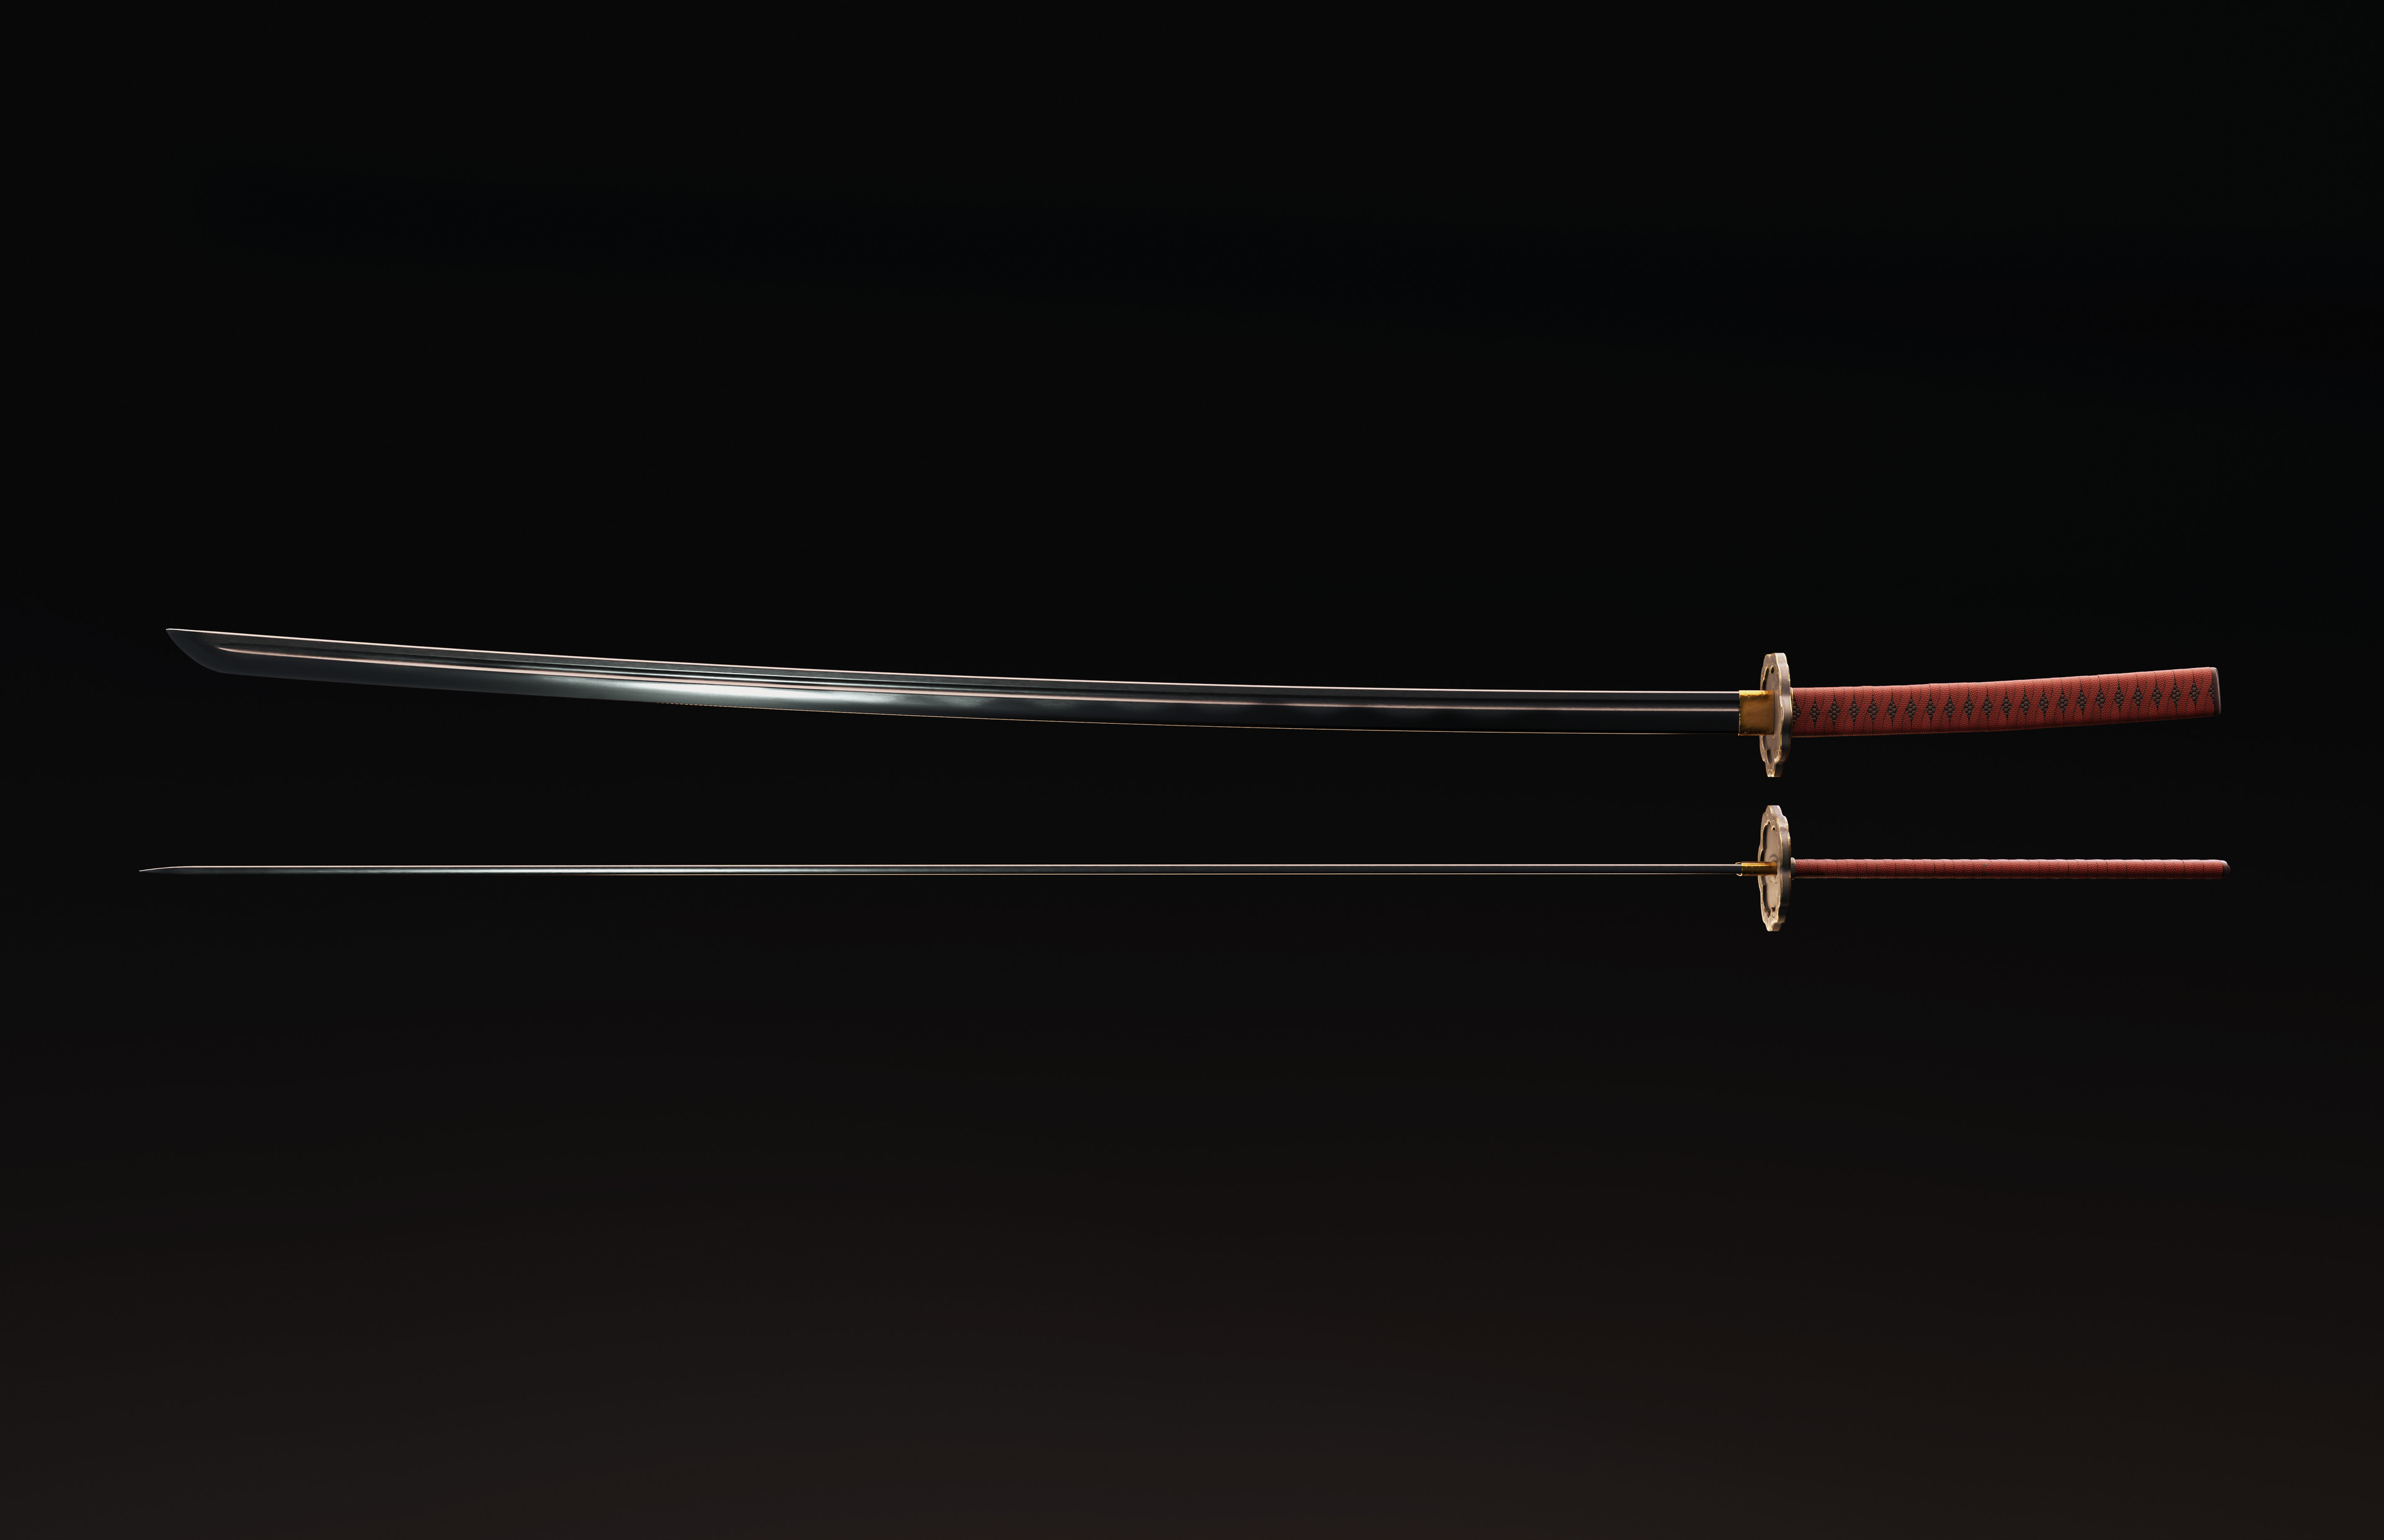 Sword
